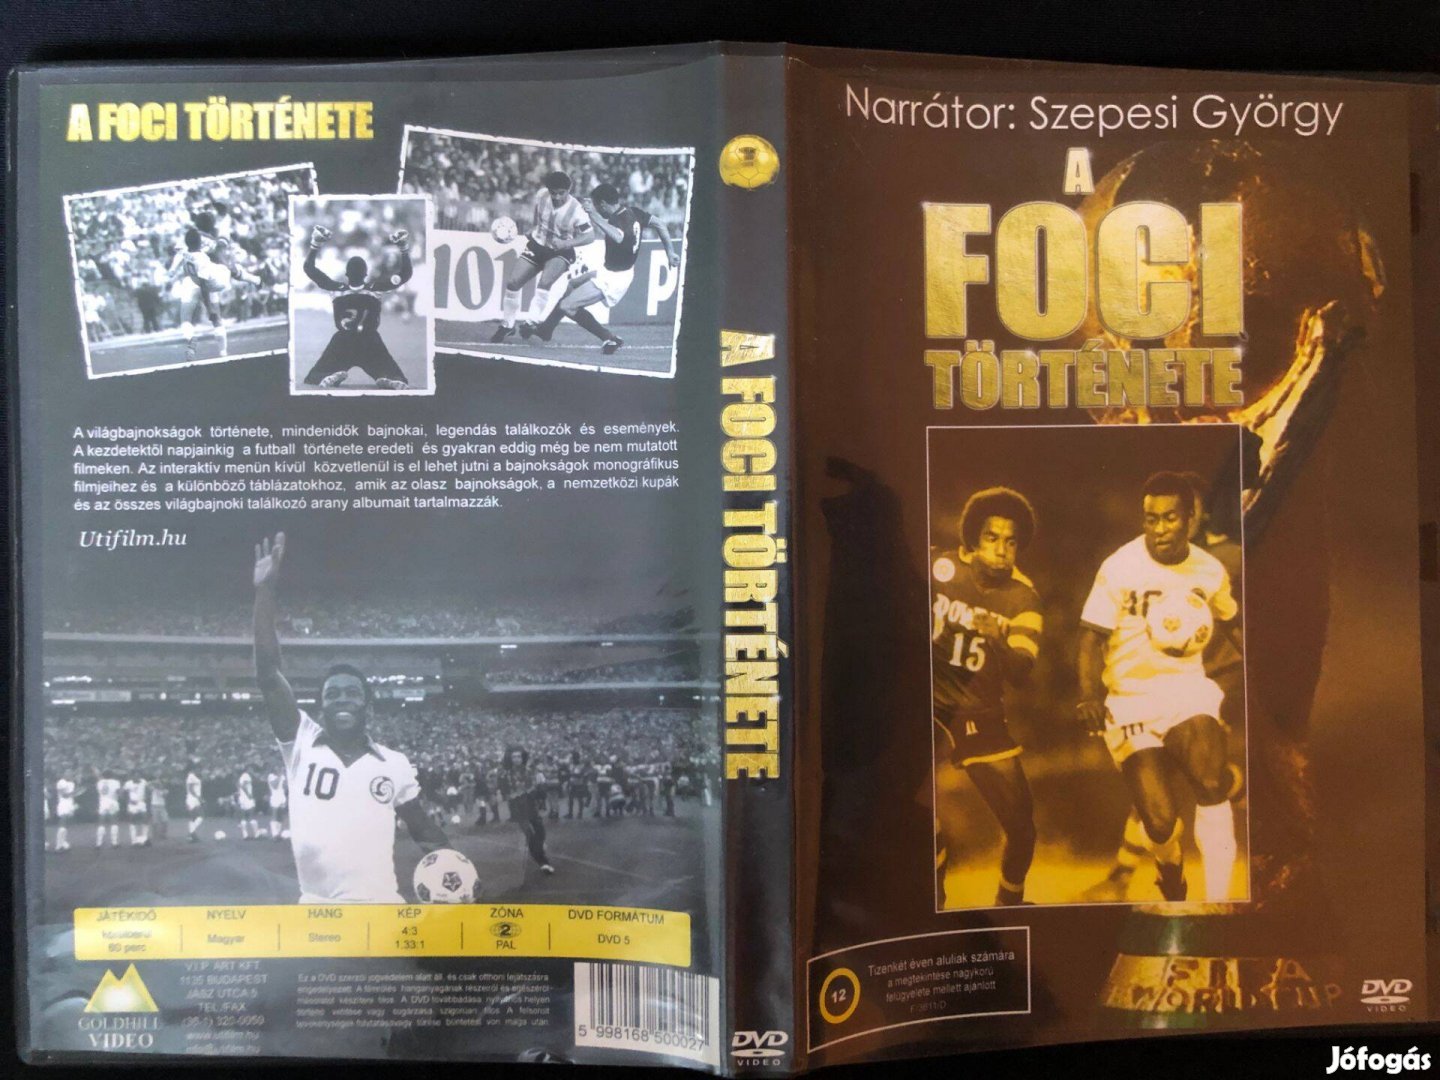 A foci története (narrátor Szepesi György) DVD